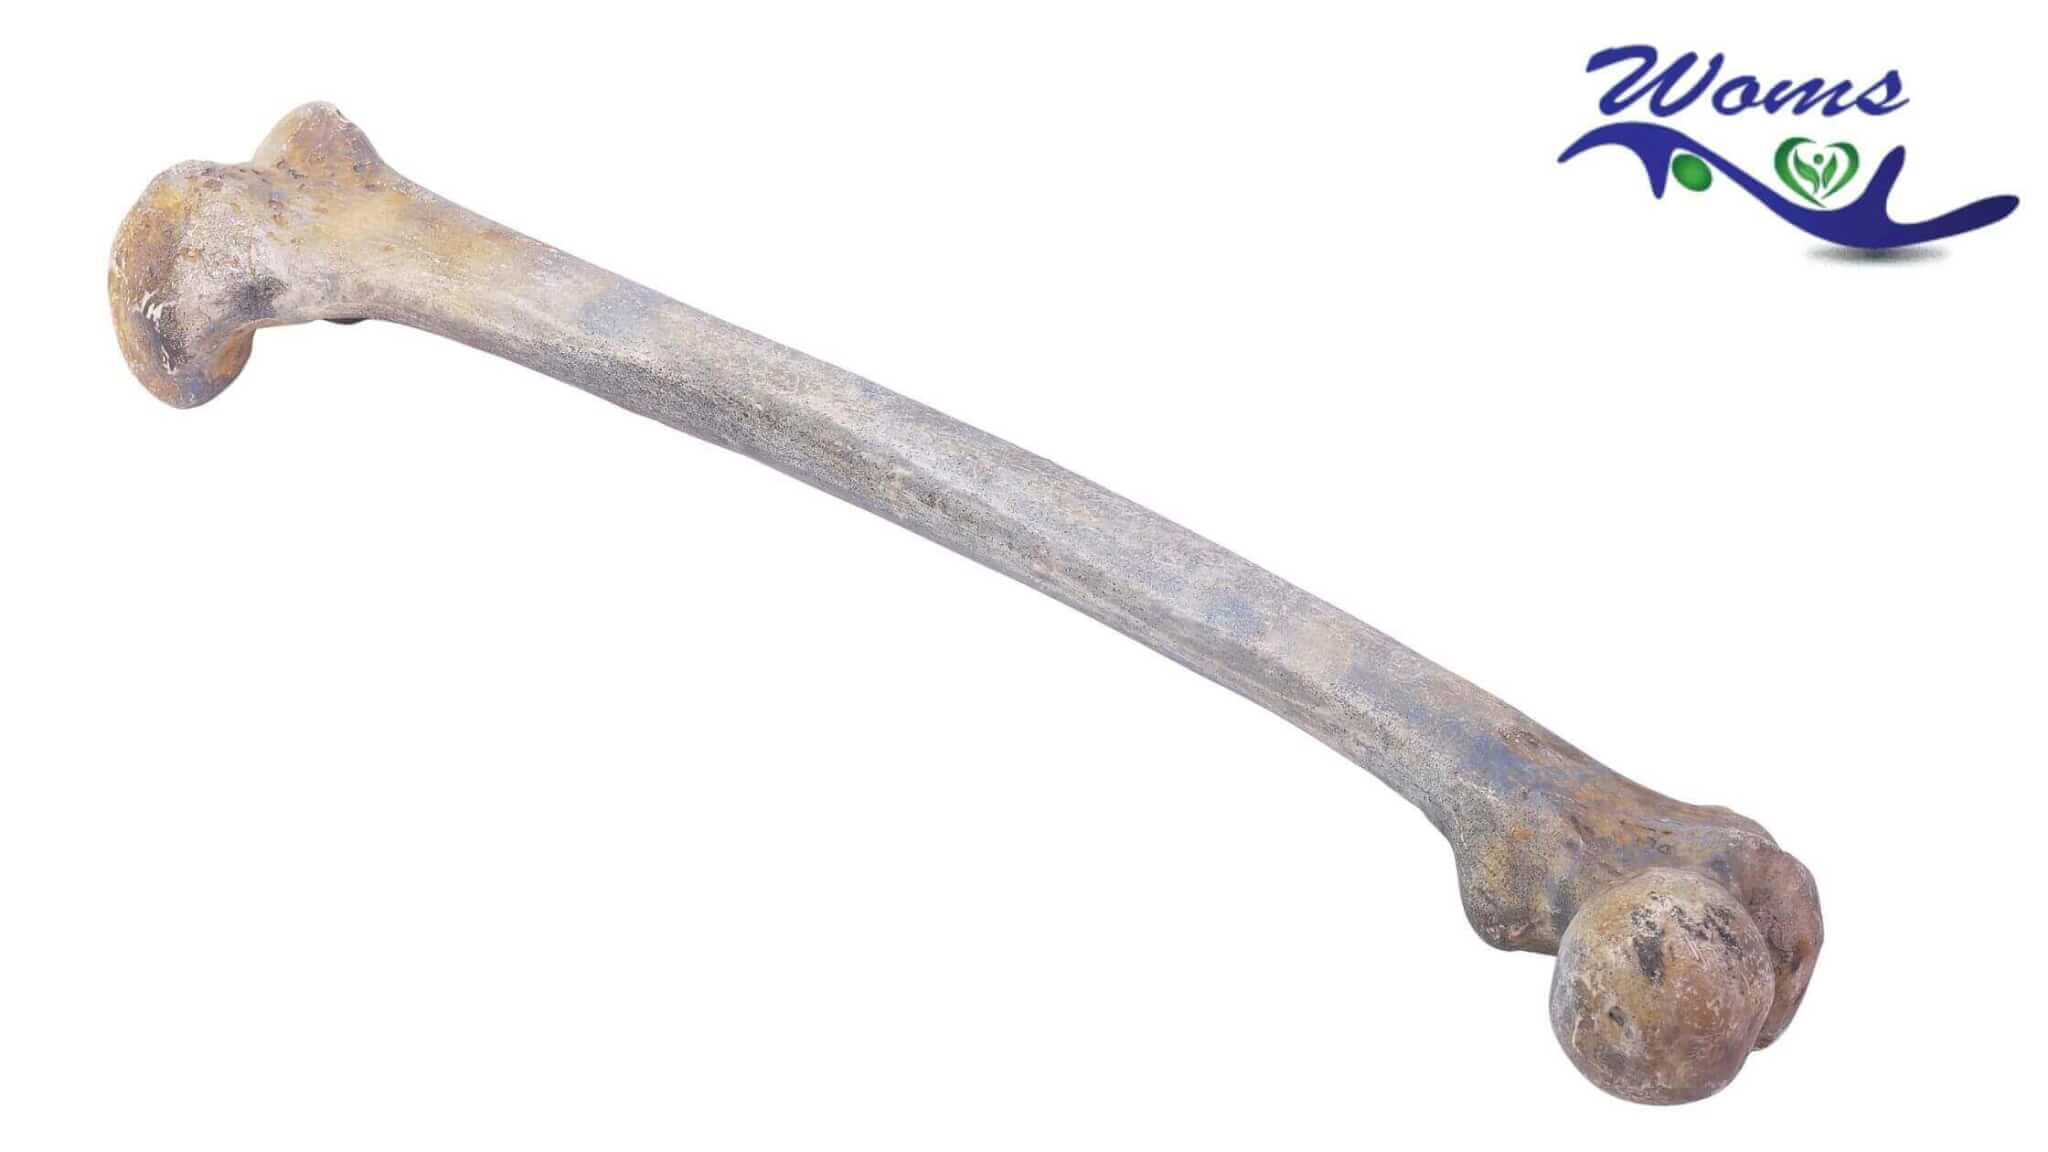 Longest bone in human body